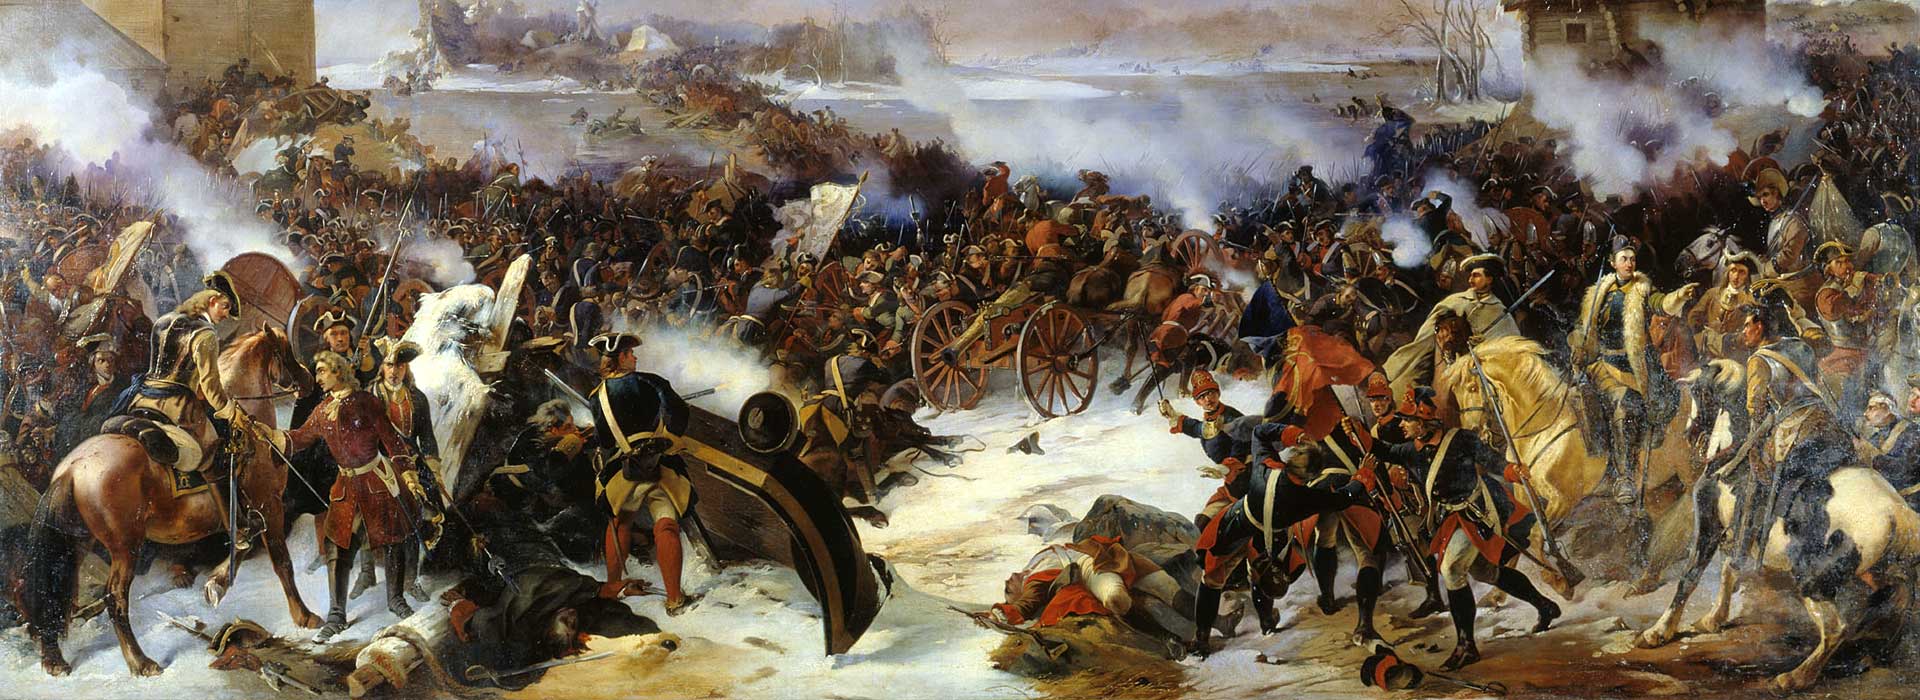 1700 поражение под. Битва при Нарве 1700.